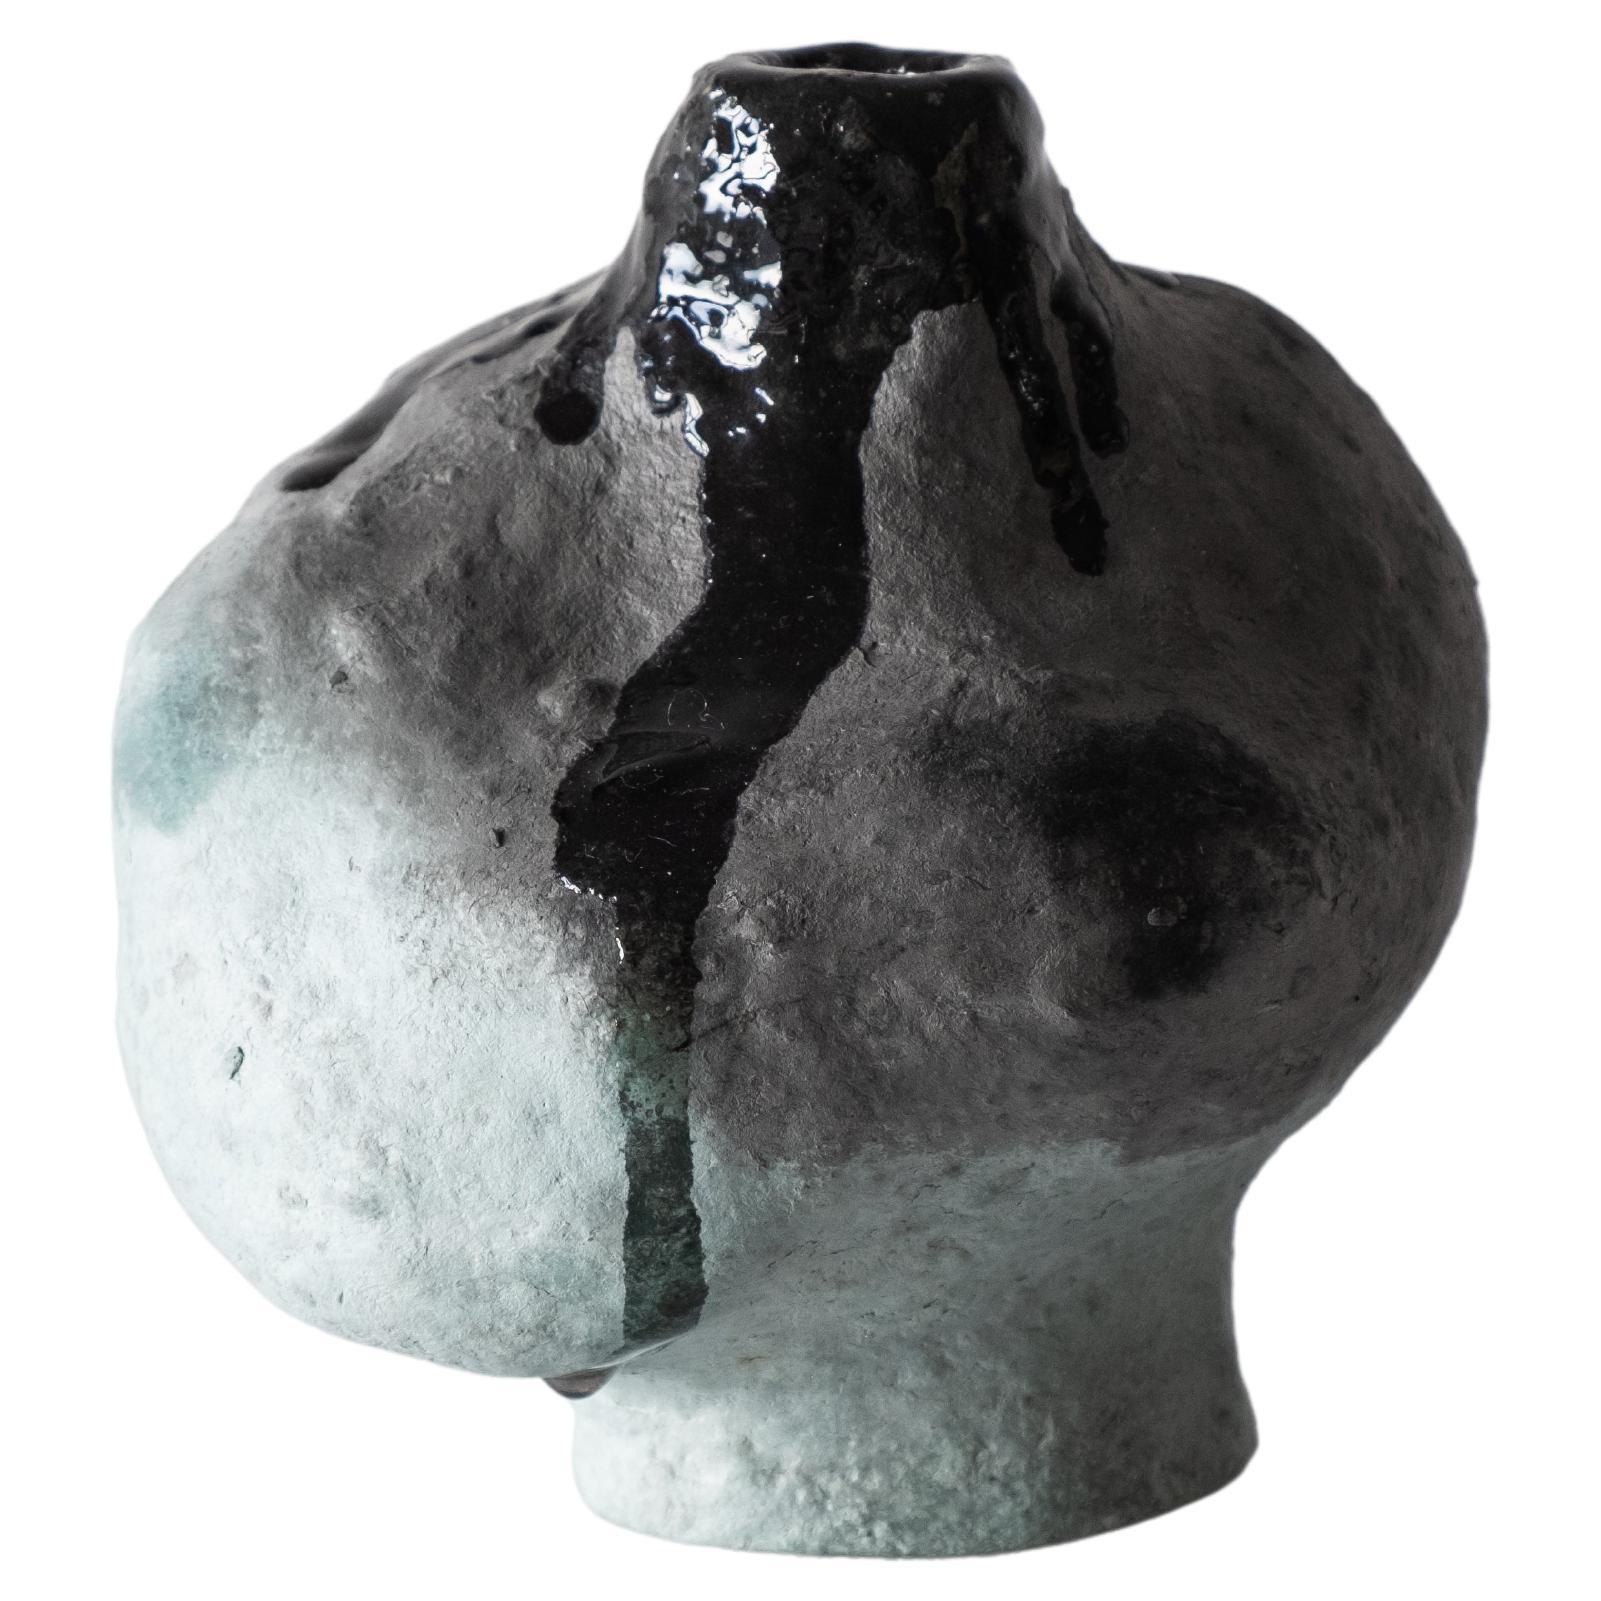 Barbican Vase No.4 by A Space